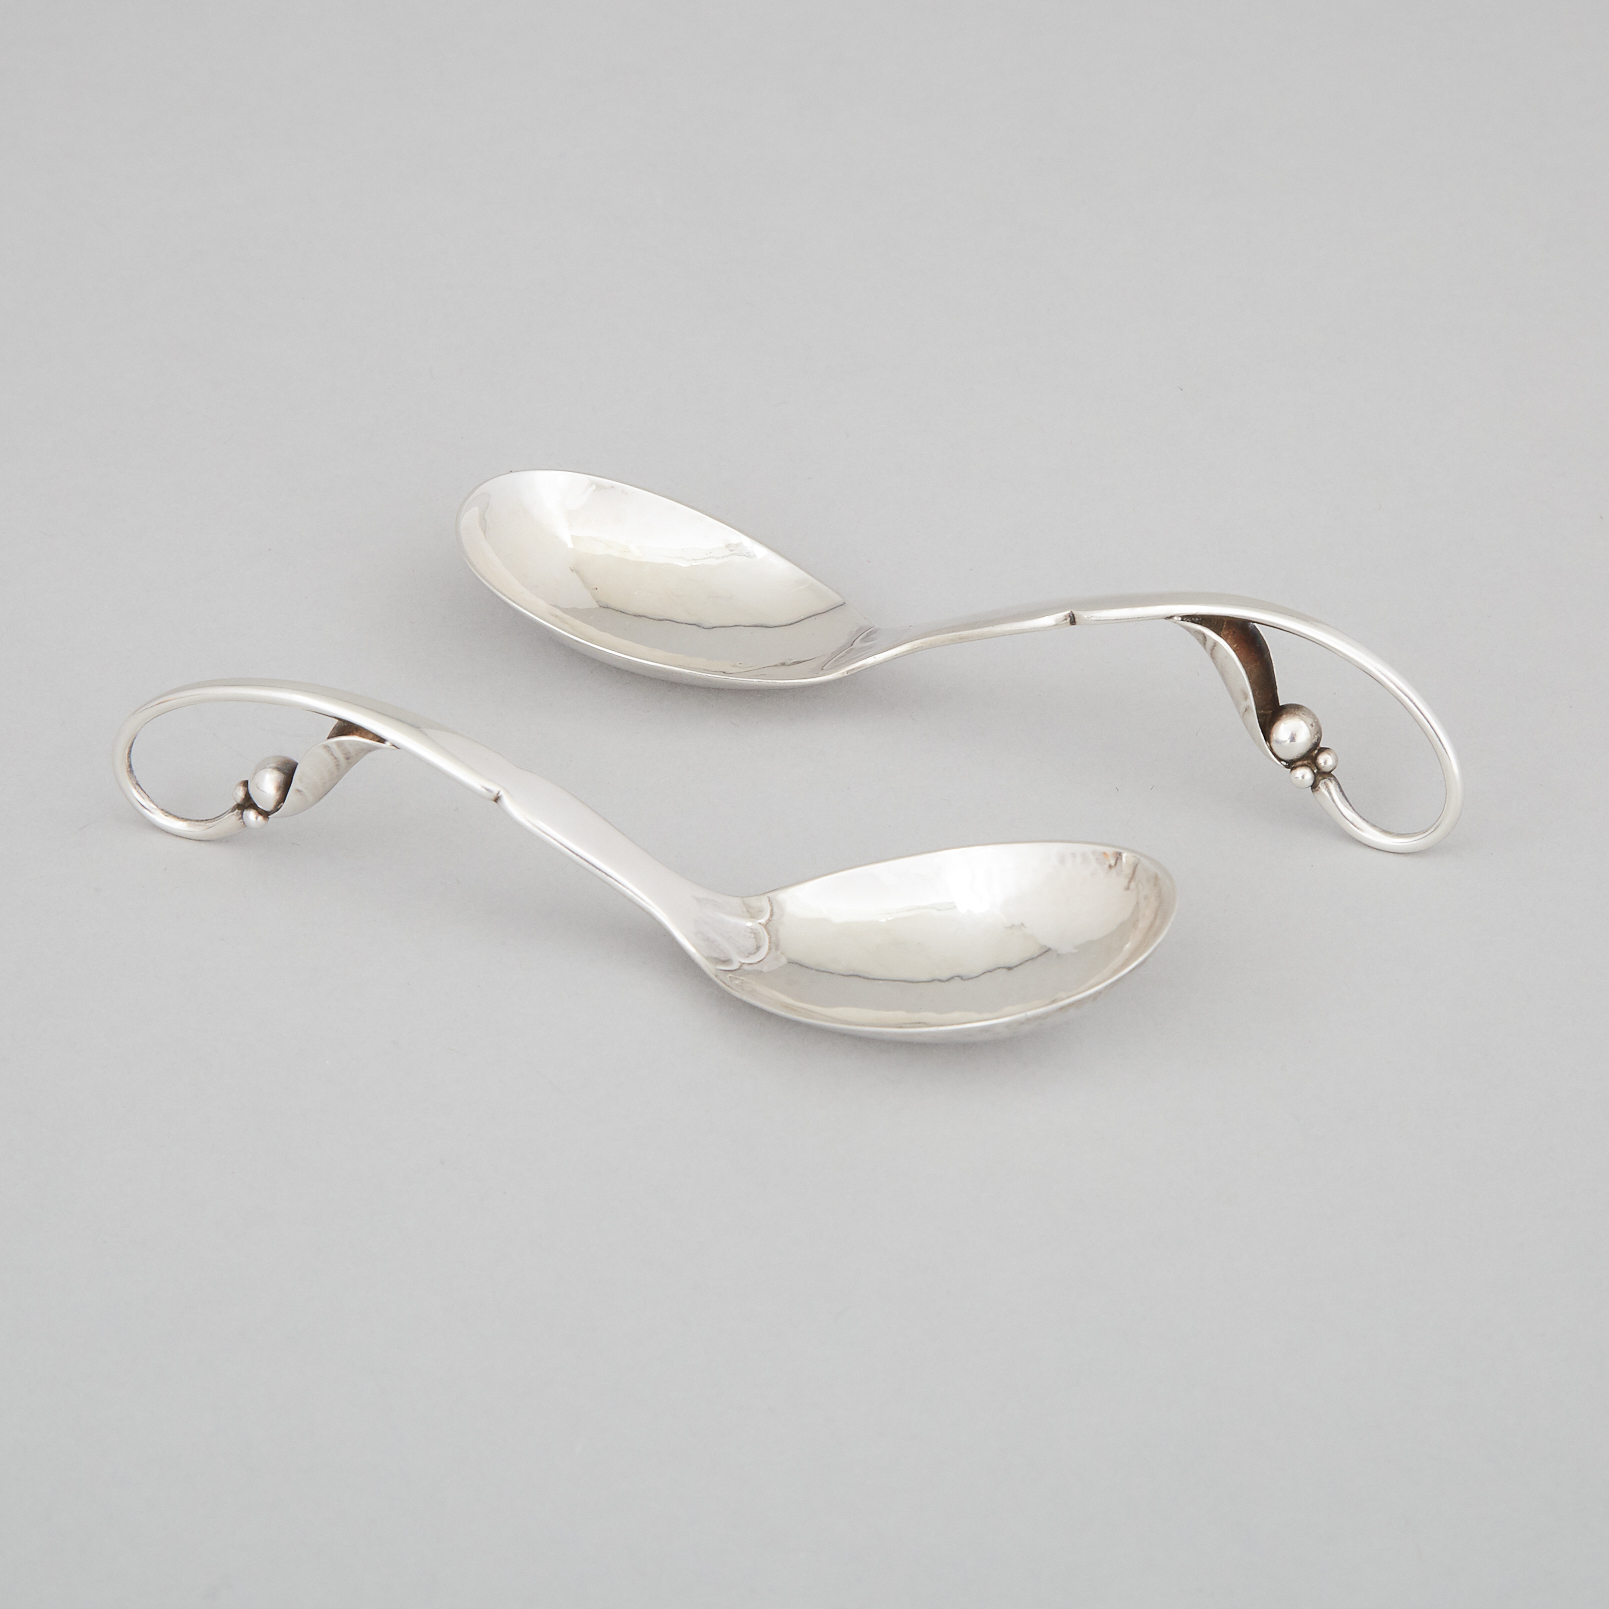 Pair of Danish Silver Sauce Spoons, #26, Georg Jensen, Copenhagen, 1926